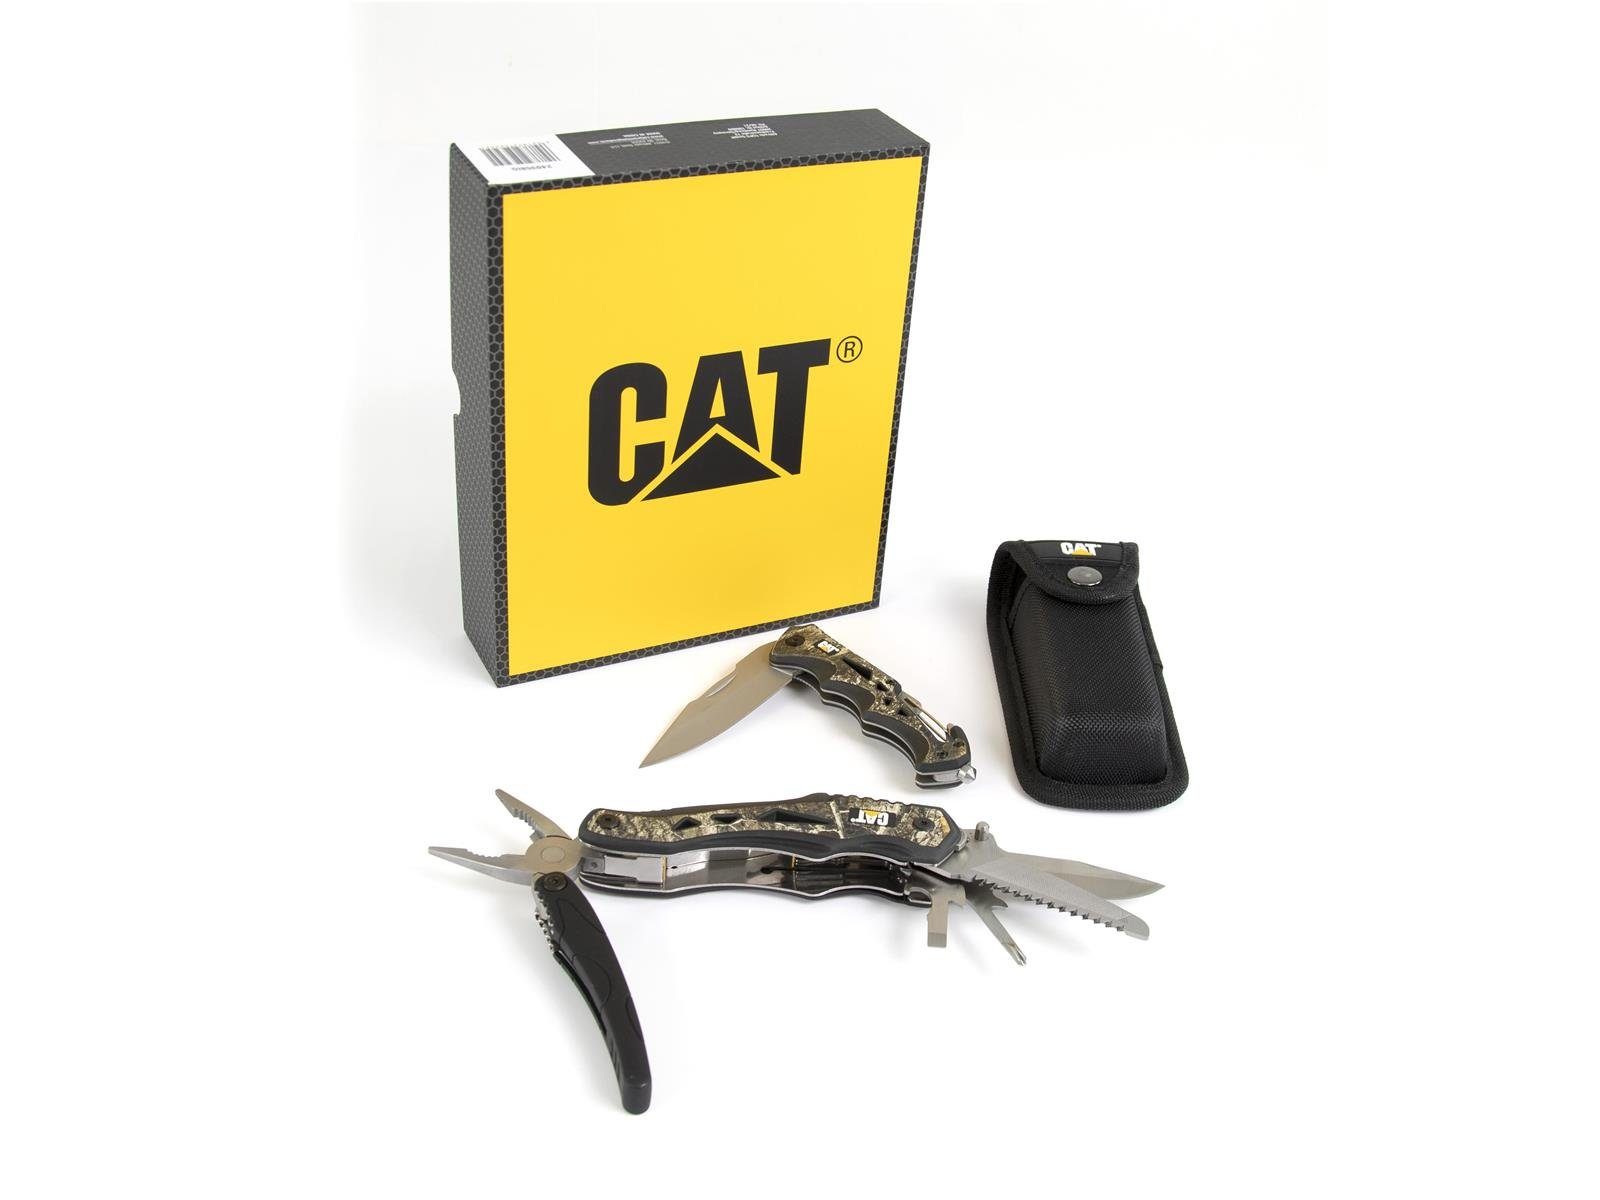 CATERPILLAR Taschenmesser CAT Multitool, 10 in mit Gürteltasche, BOX Sicherheitshammer 2er Multitool Taschen, Set Glasfasergriff, Klappmesser (Set), mit 1